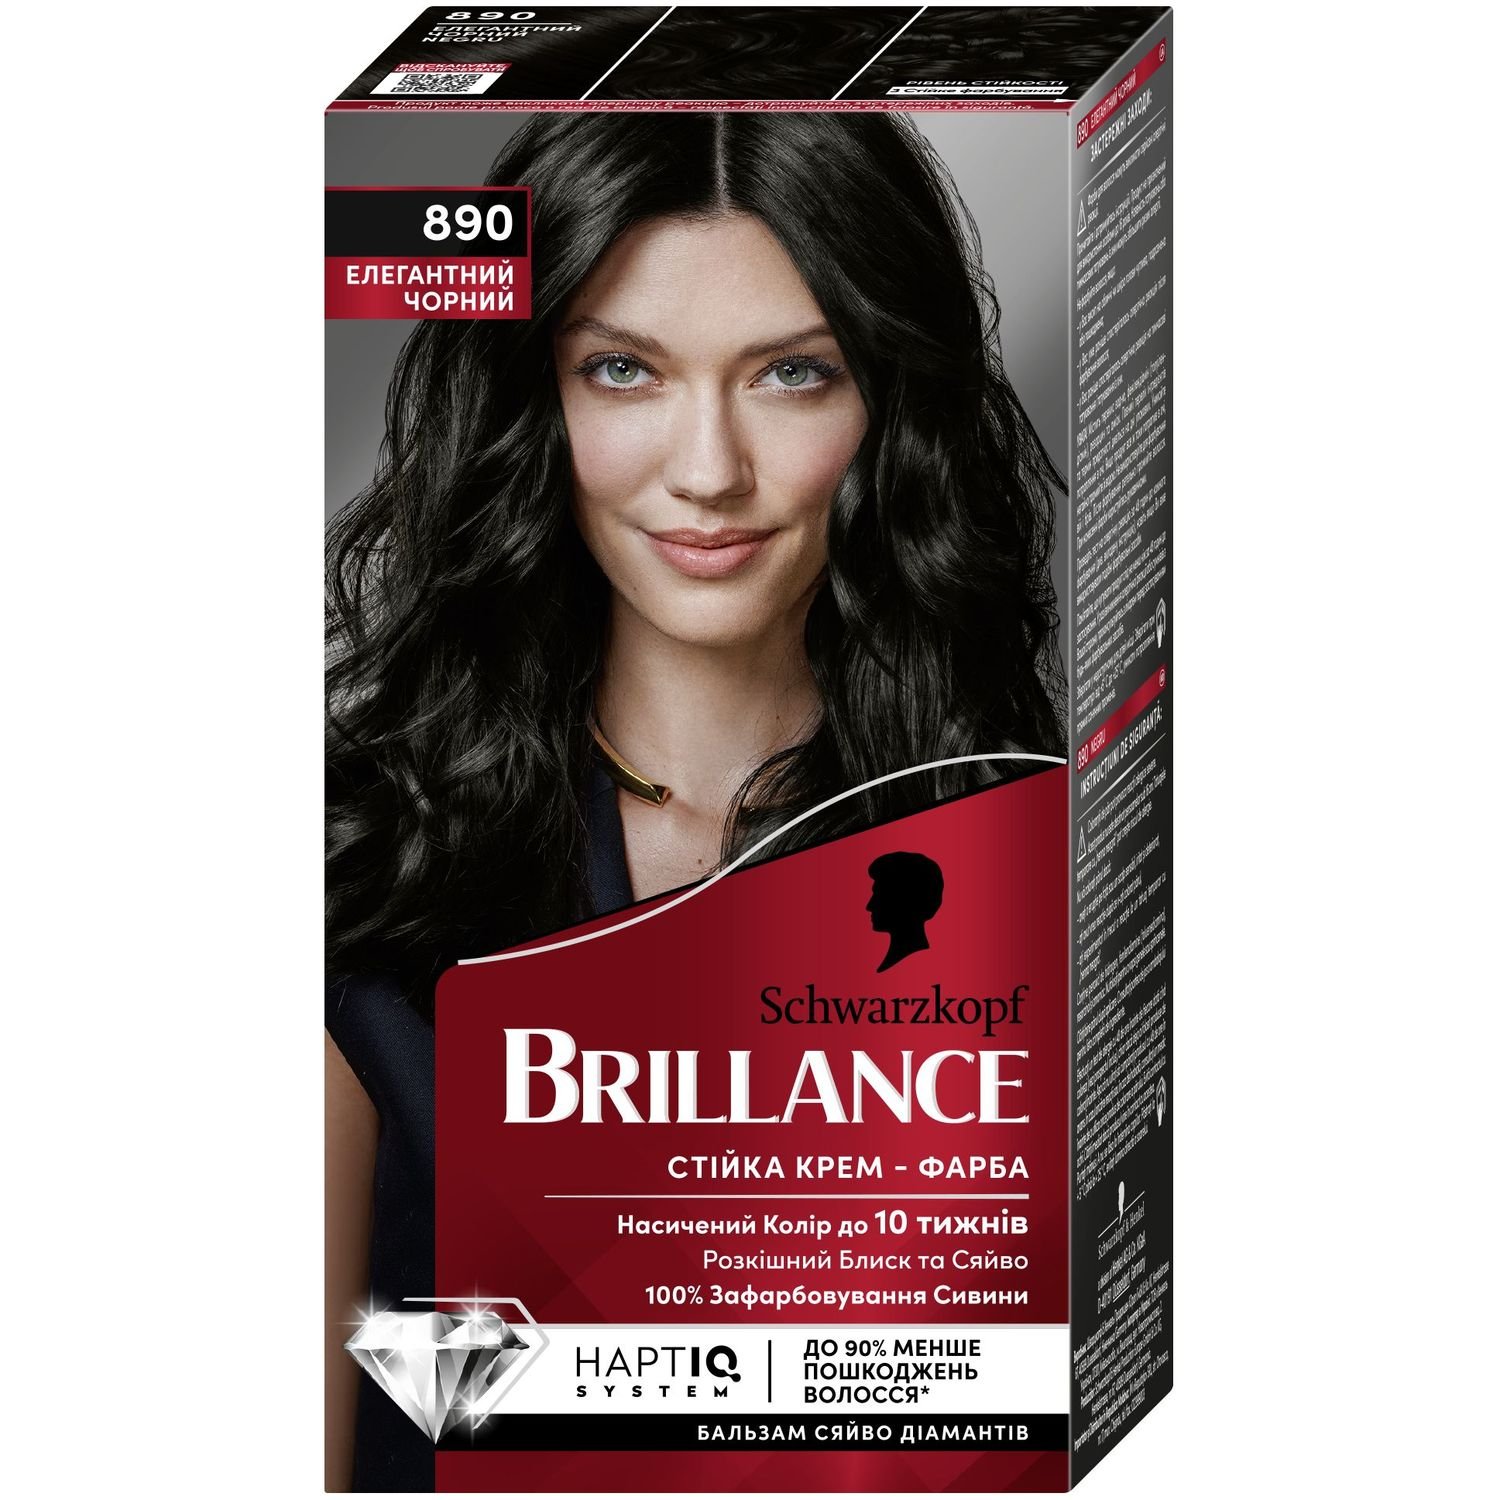 Крем-краска для волос Brillance 890 Элегантный черный, 160 мл (2686351) - фото 1